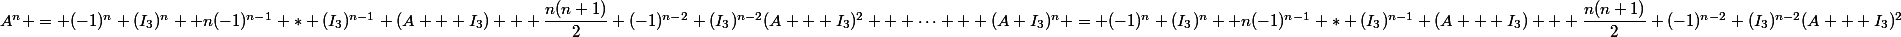 A^n = (-1)^n (I_3)^n +n(-1)^{n-1} * (I_3)^{n-1} (A + I_3) + \dfrac{n(n+1)}{2} (-1)^{n-2} (I_3)^{n-2}(A + I_3)^2 + \dots + (A+I_3)^n = (-1)^n (I_3)^n +n(-1)^{n-1} * (I_3)^{n-1} (A + I_3) + \dfrac{n(n+1)}{2} (-1)^{n-2} (I_3)^{n-2}(A + I_3)^2